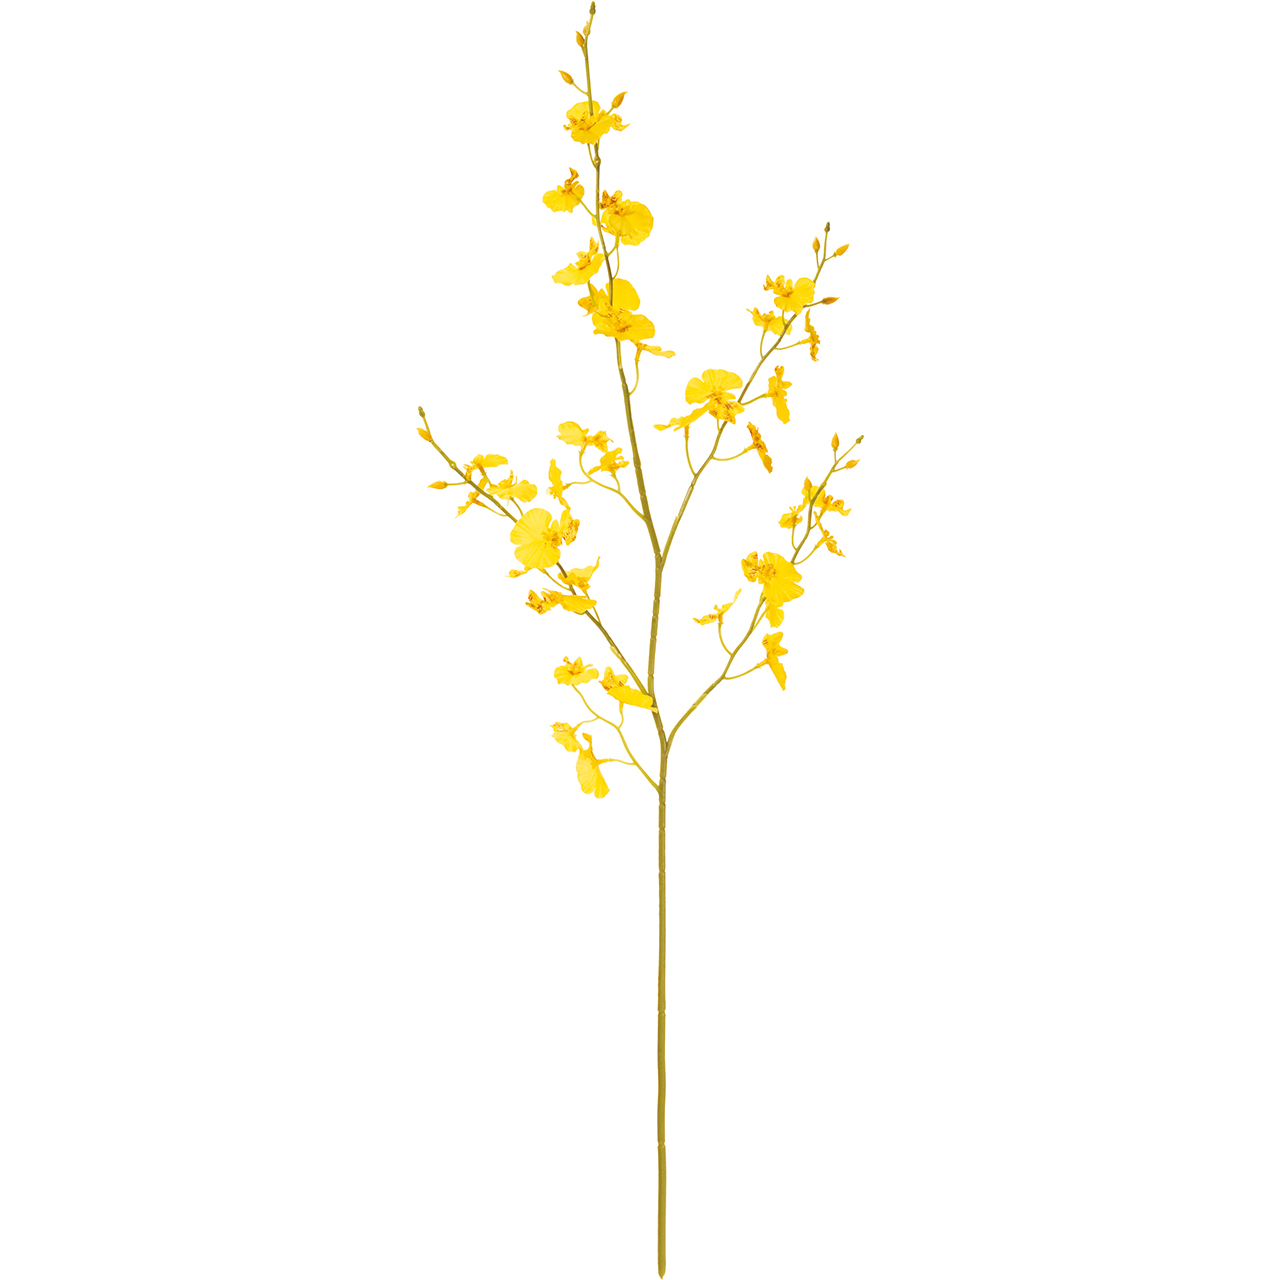 マイフラ 通販 Magiq フェアリーオンシジウム ゴールドイエロー アーティフィシャルフラワー 造花 Fm オンシジューム 花径 約3 5 4 5 全長 約85cm ゴールドイエロー Magiq アーティフィシャルフラワー 造花 全国にmagiq 花器 花資材などをお届けします